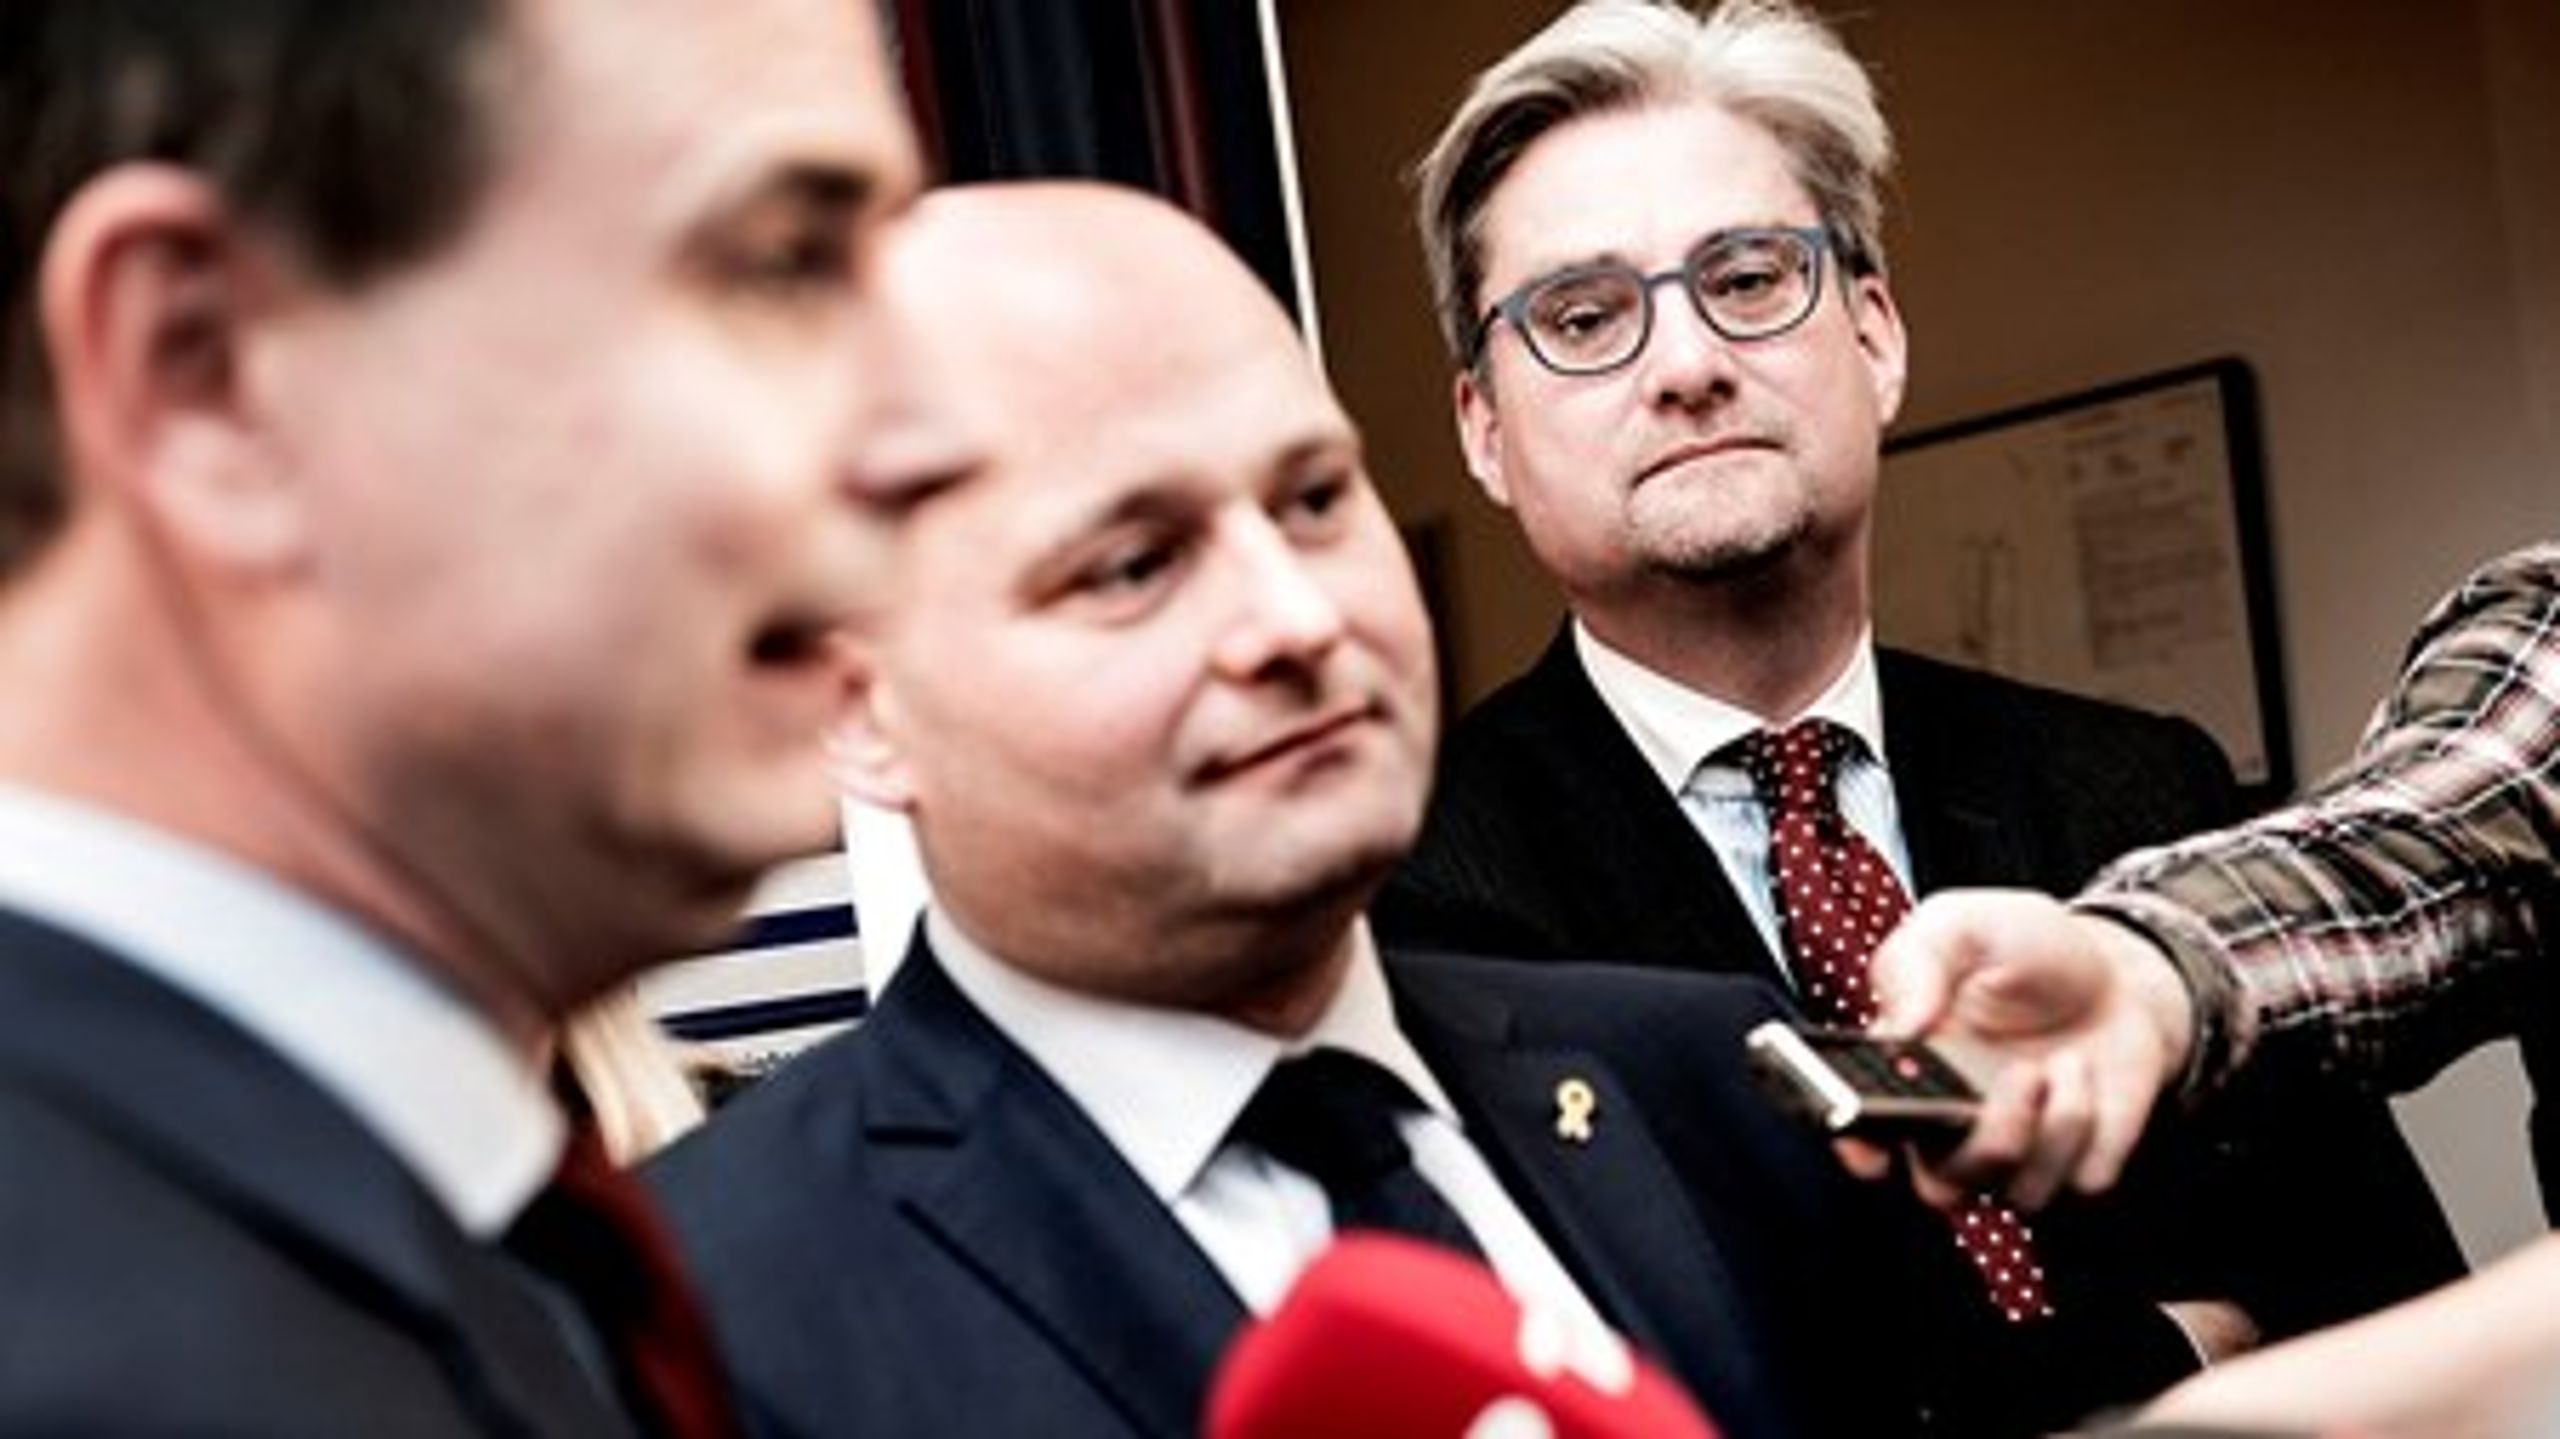 "Vi har indgået en aftale, der giver det stærkeste politi, vi har haft i Danmark i nyere tid," lød det fra justitsminister Søren Pind, da han sammen med de andre aftaleparter præsenterede den nye politiaftale.&nbsp;<br>